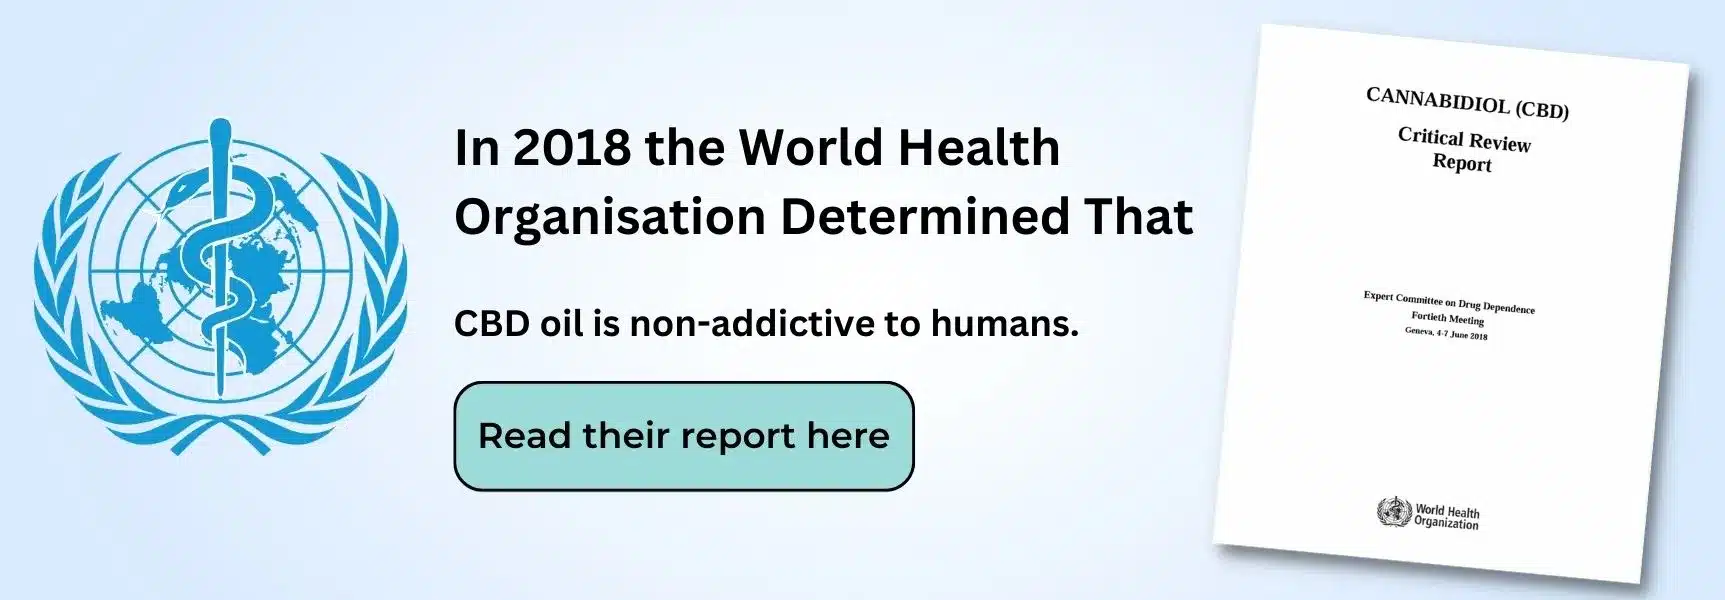 una pancarta que decía que en 2018 la Organización Mundial de la Salud consideró CBD ser no adictivo y plantear pequeñas preocupaciones de seguridad pública. Este banner hace clic en el informe de la OMS.